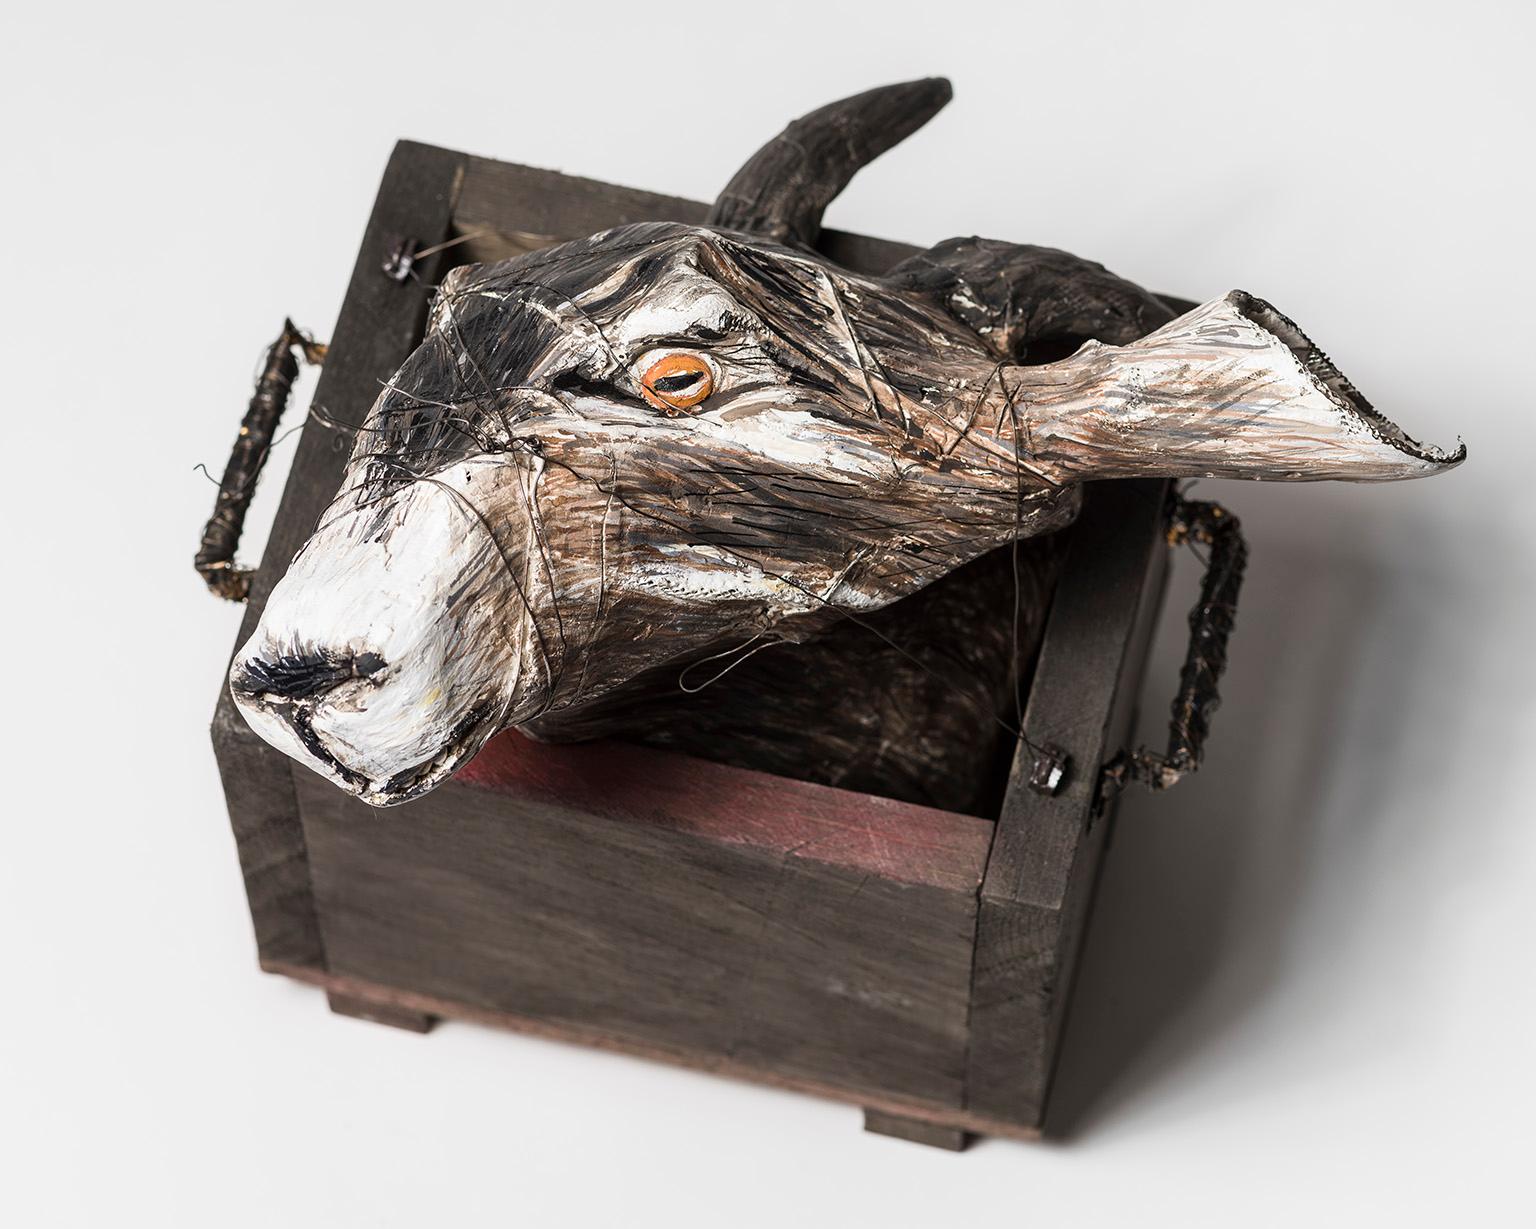 Sculpture de tête de chèvre dans une boîte en bois : "Jersey Devil II"